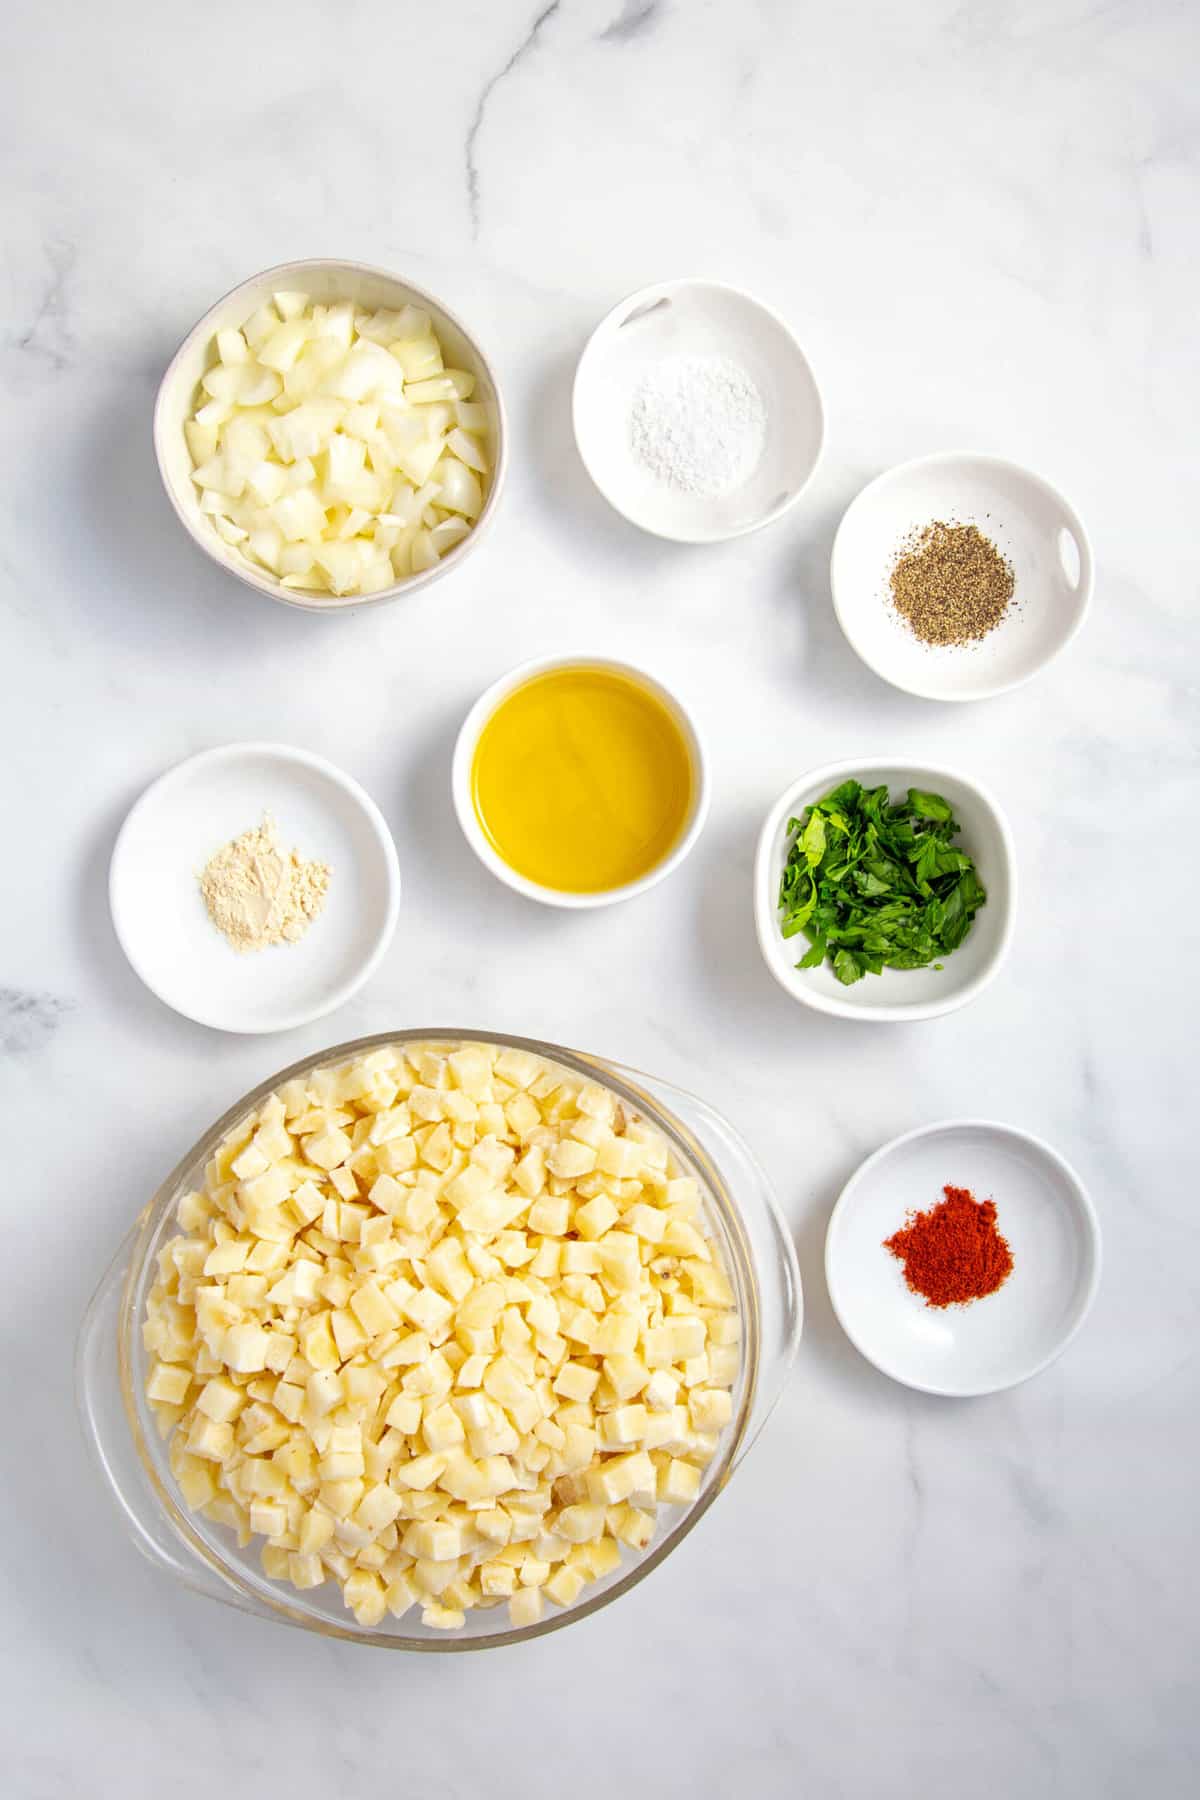 ingredients to make breakfast potatoes